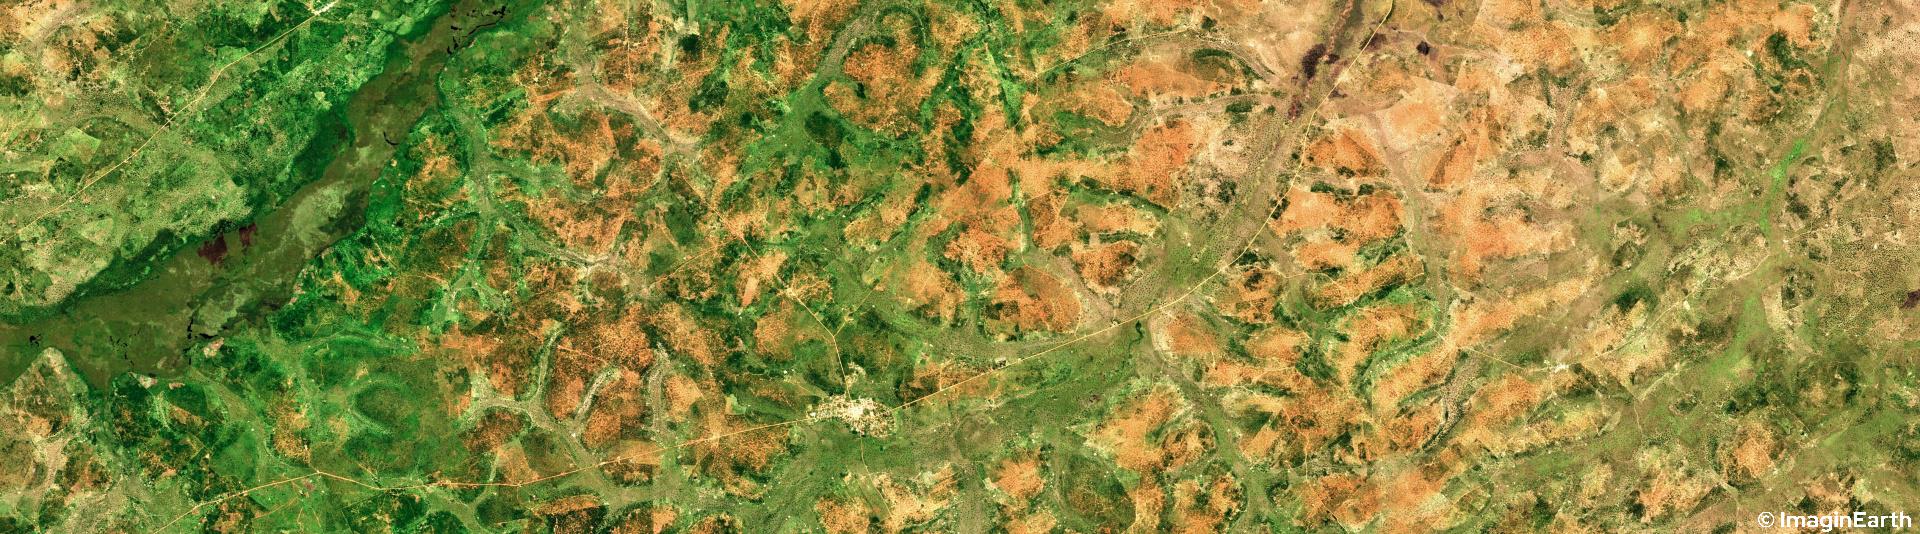 voyager en afrique, photo satellite